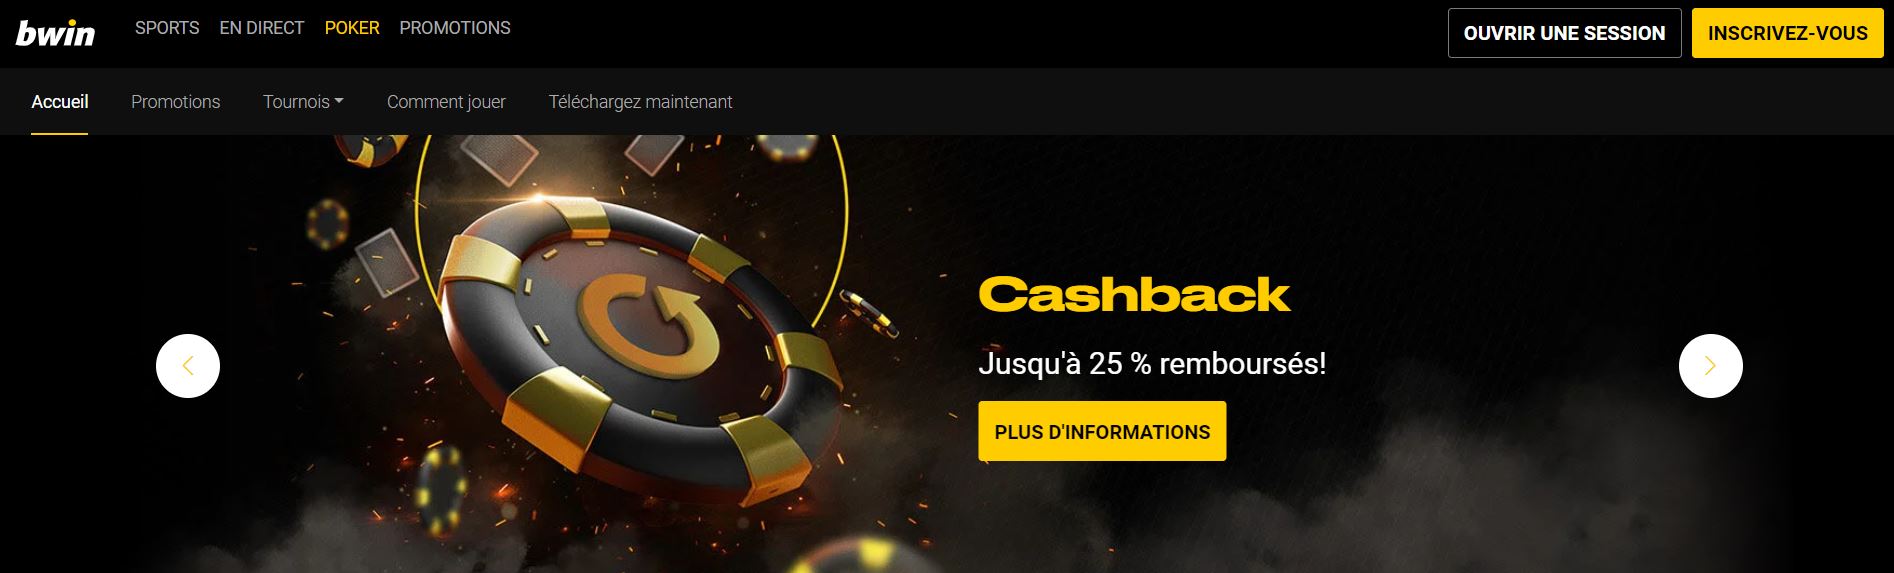 Bwin - Cashback - Casino PayPal